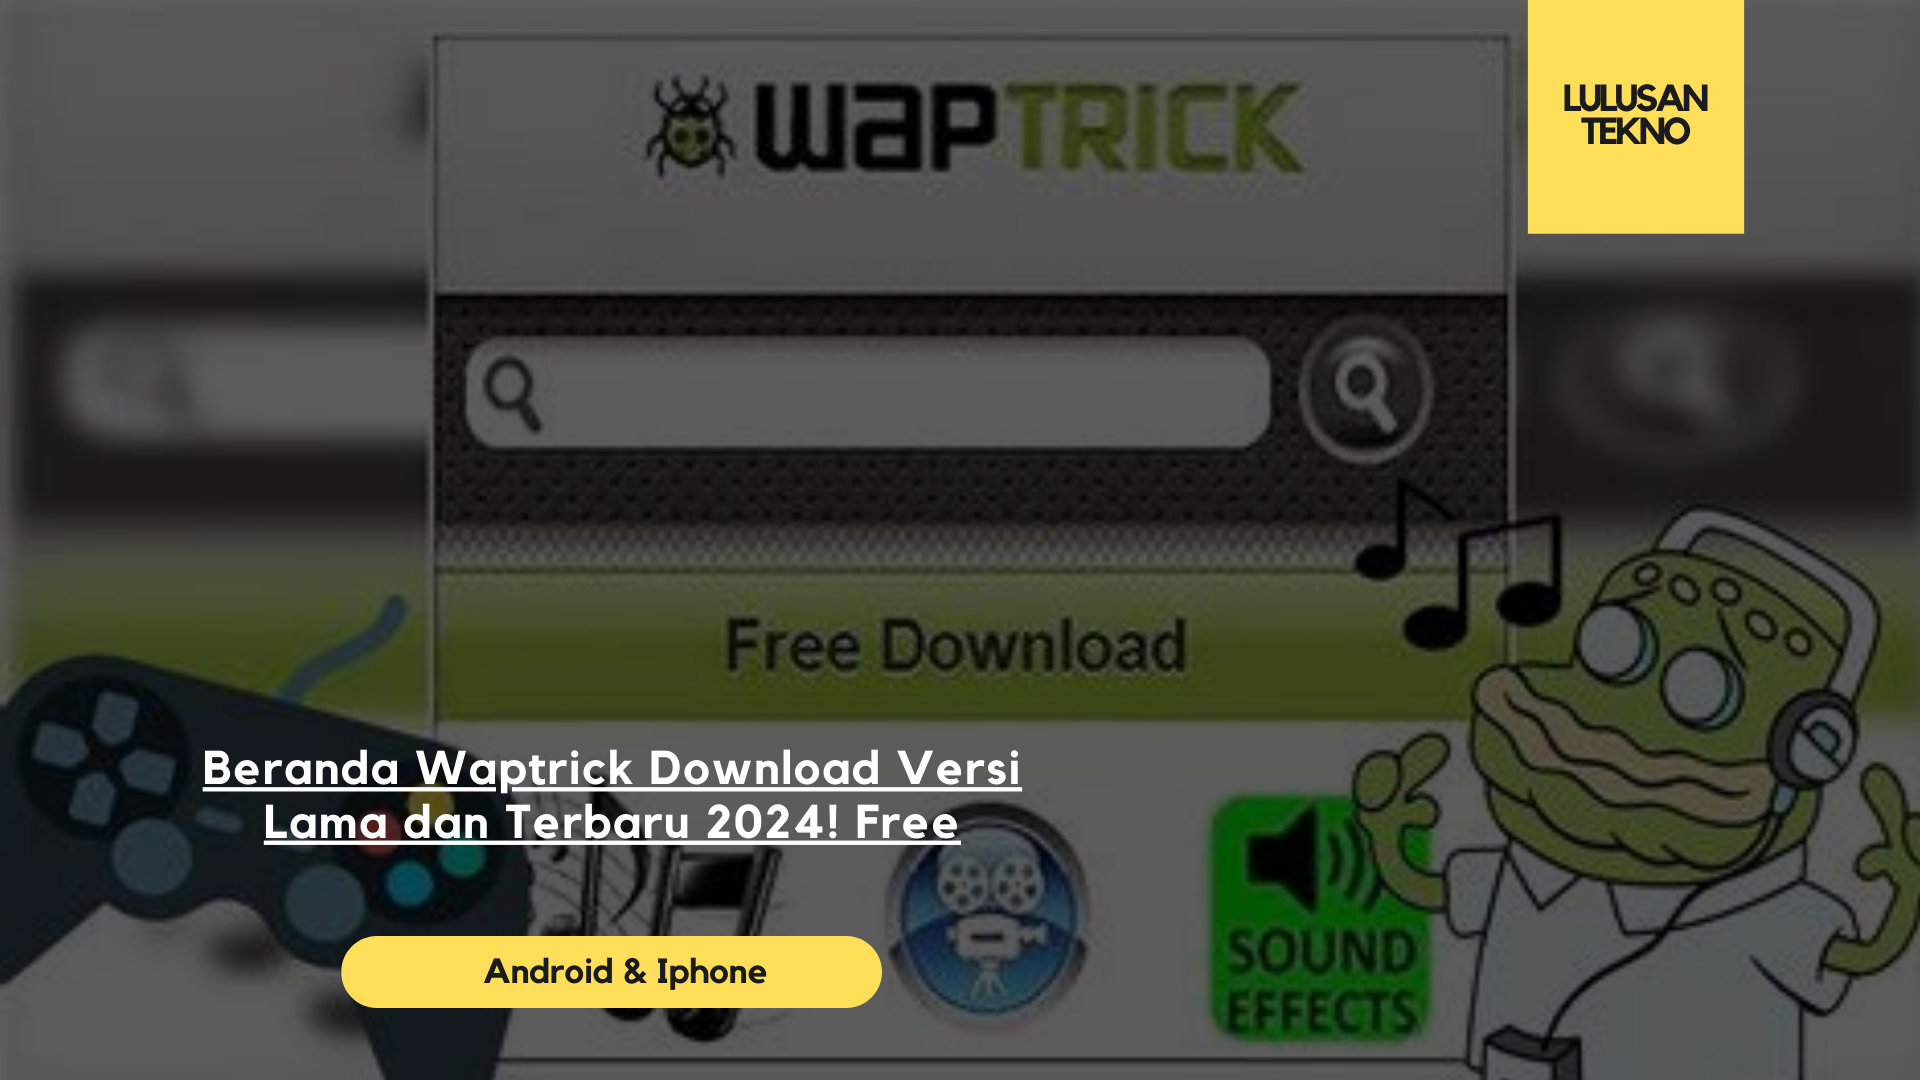 Beranda Waptrick Download Versi Lama dan Terbaru 2024! Free